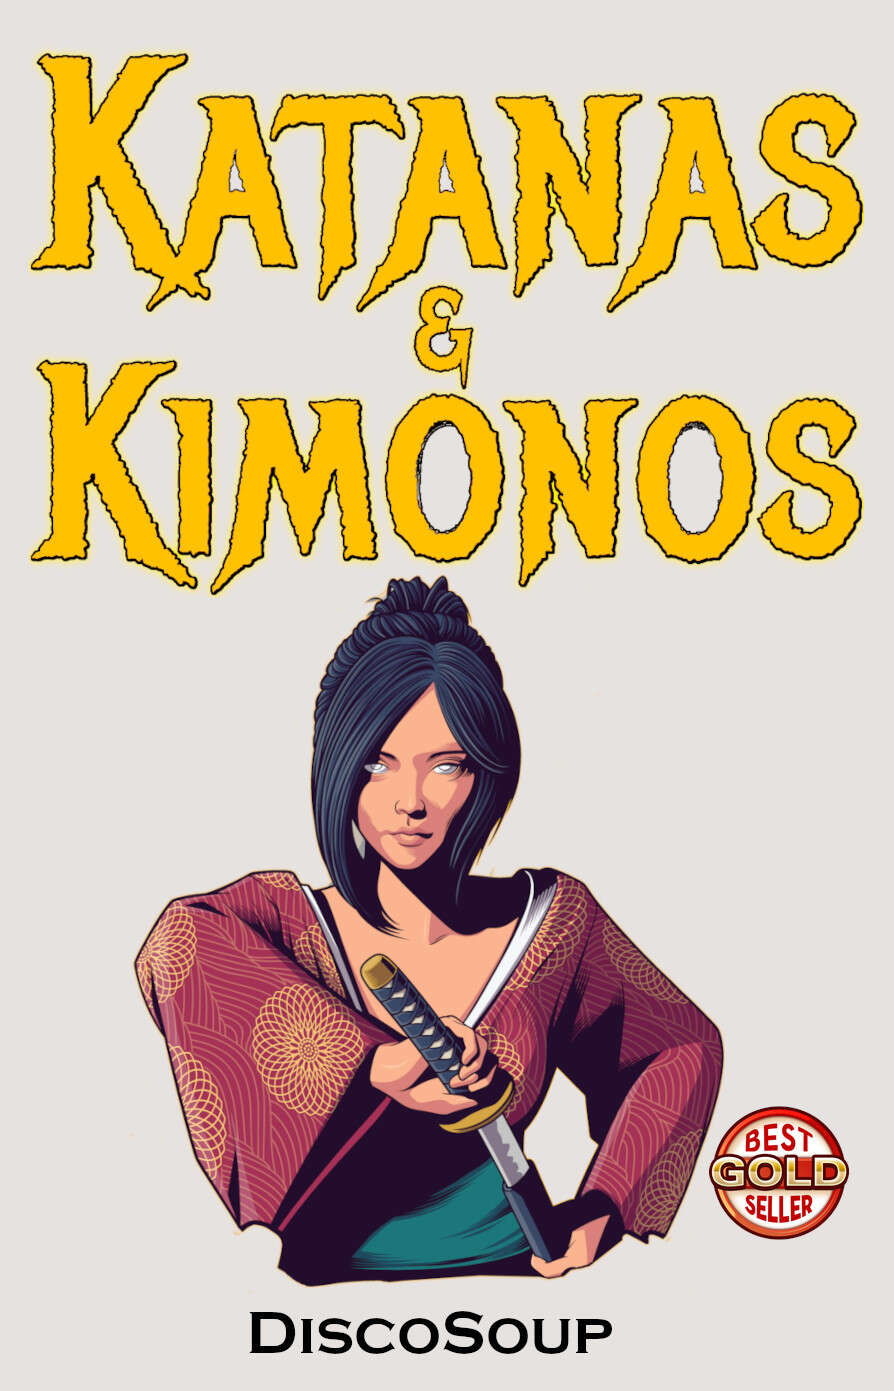 Katanas and Kimonos